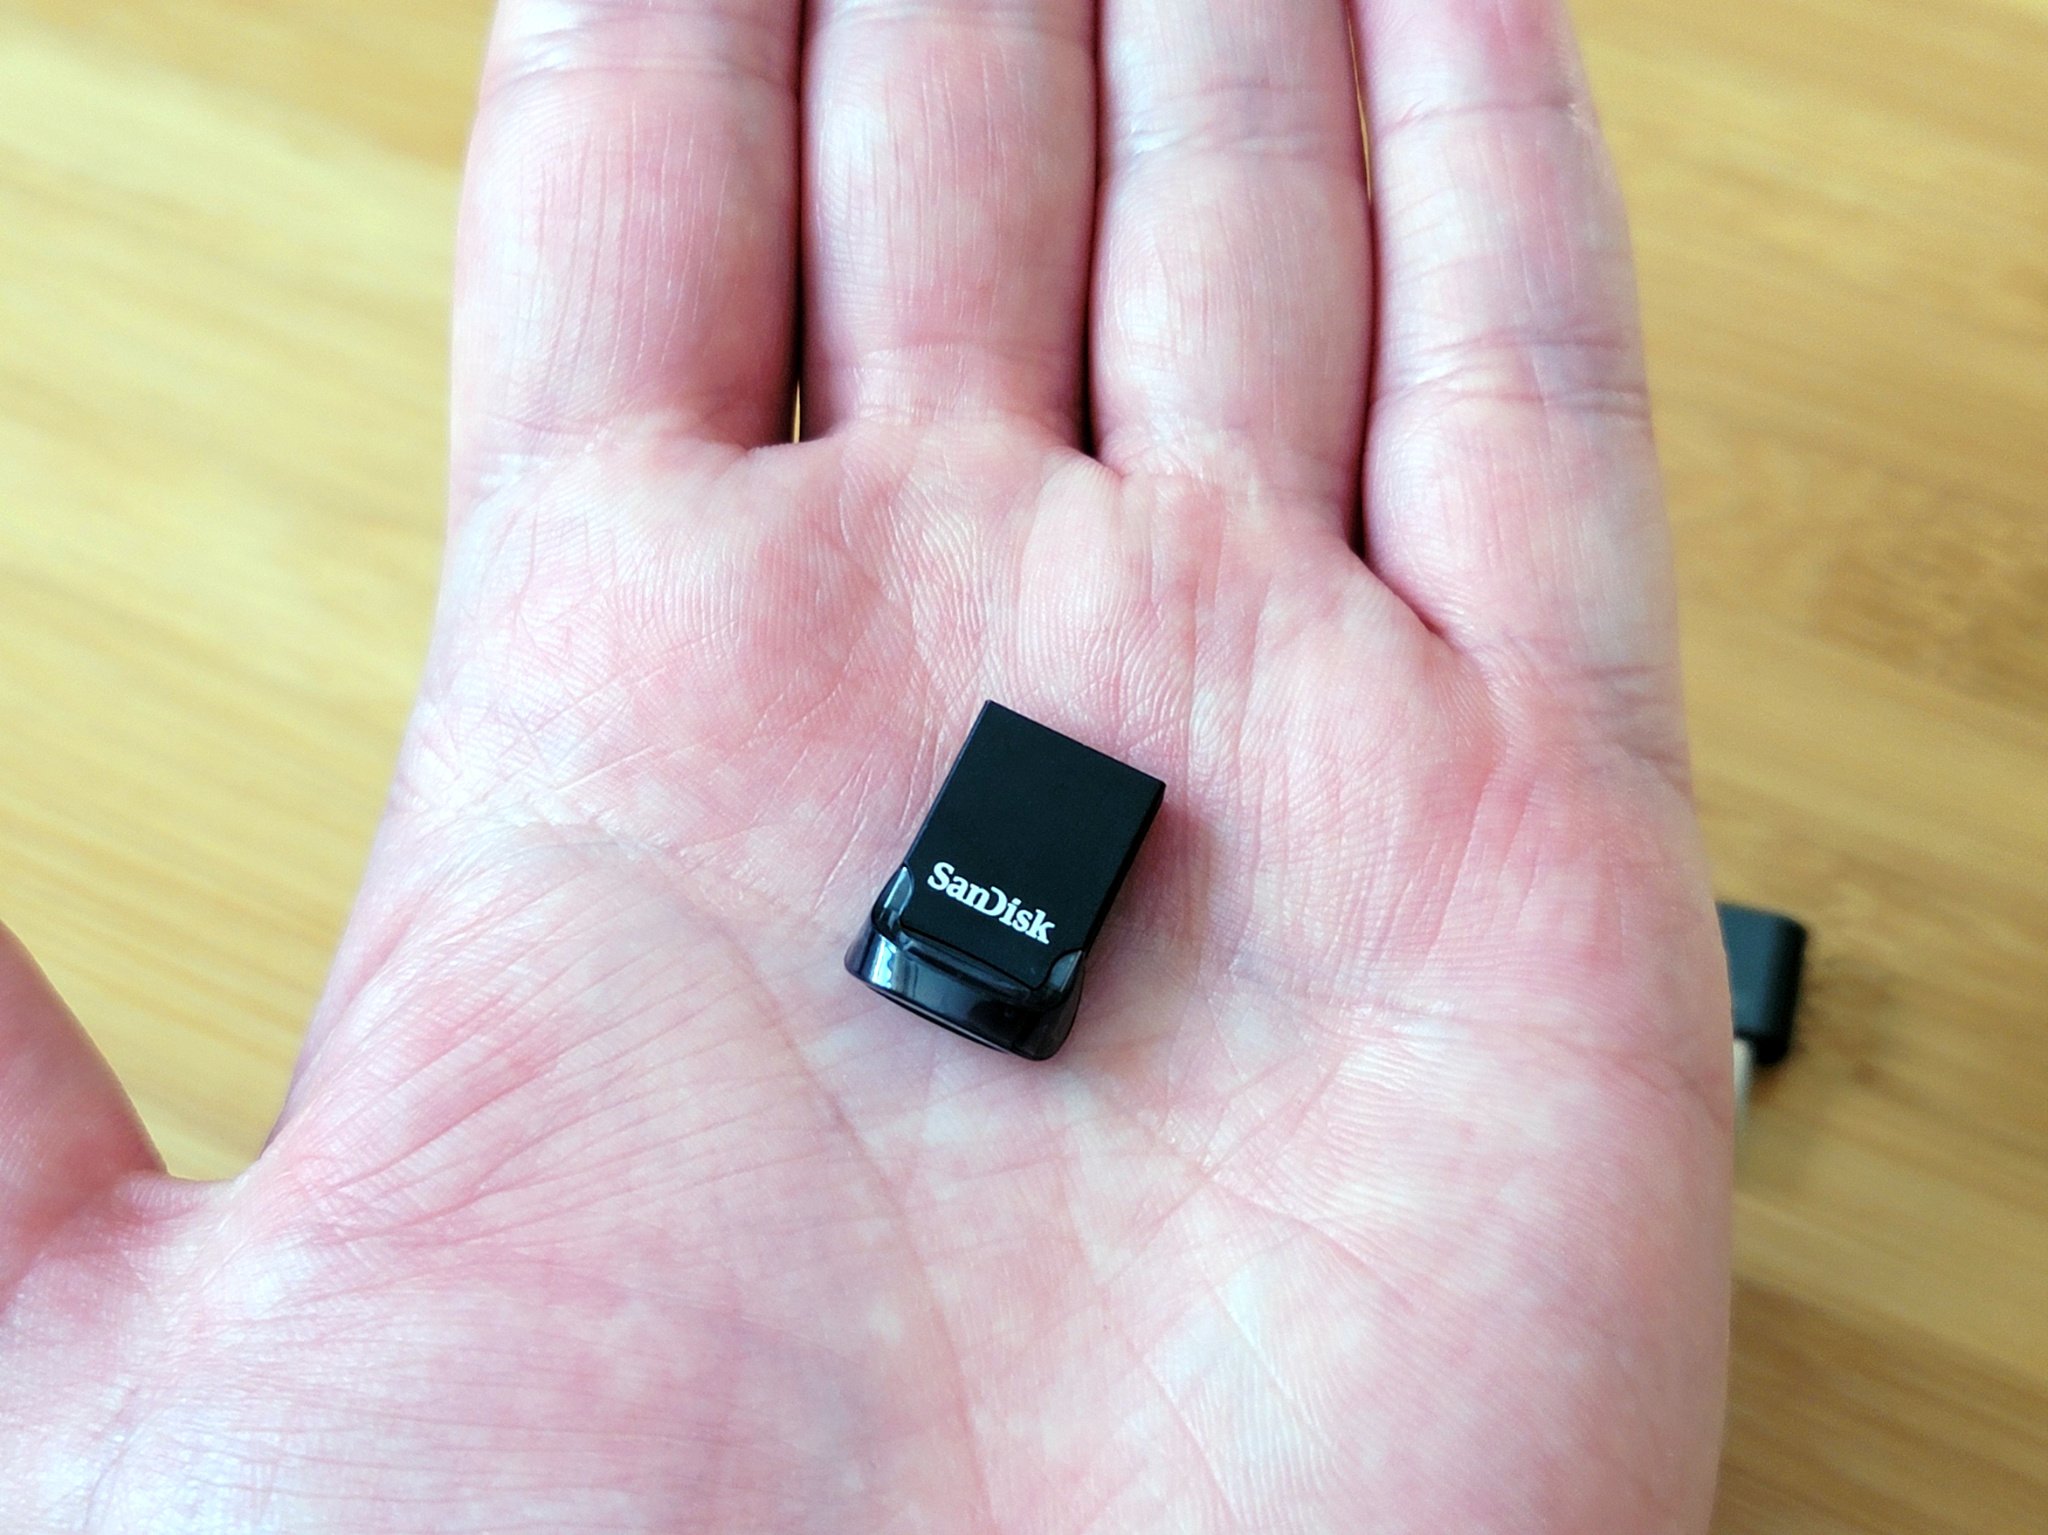 Basics 128 GB Ultra Fast USB 3.1 Flash Drive, Black